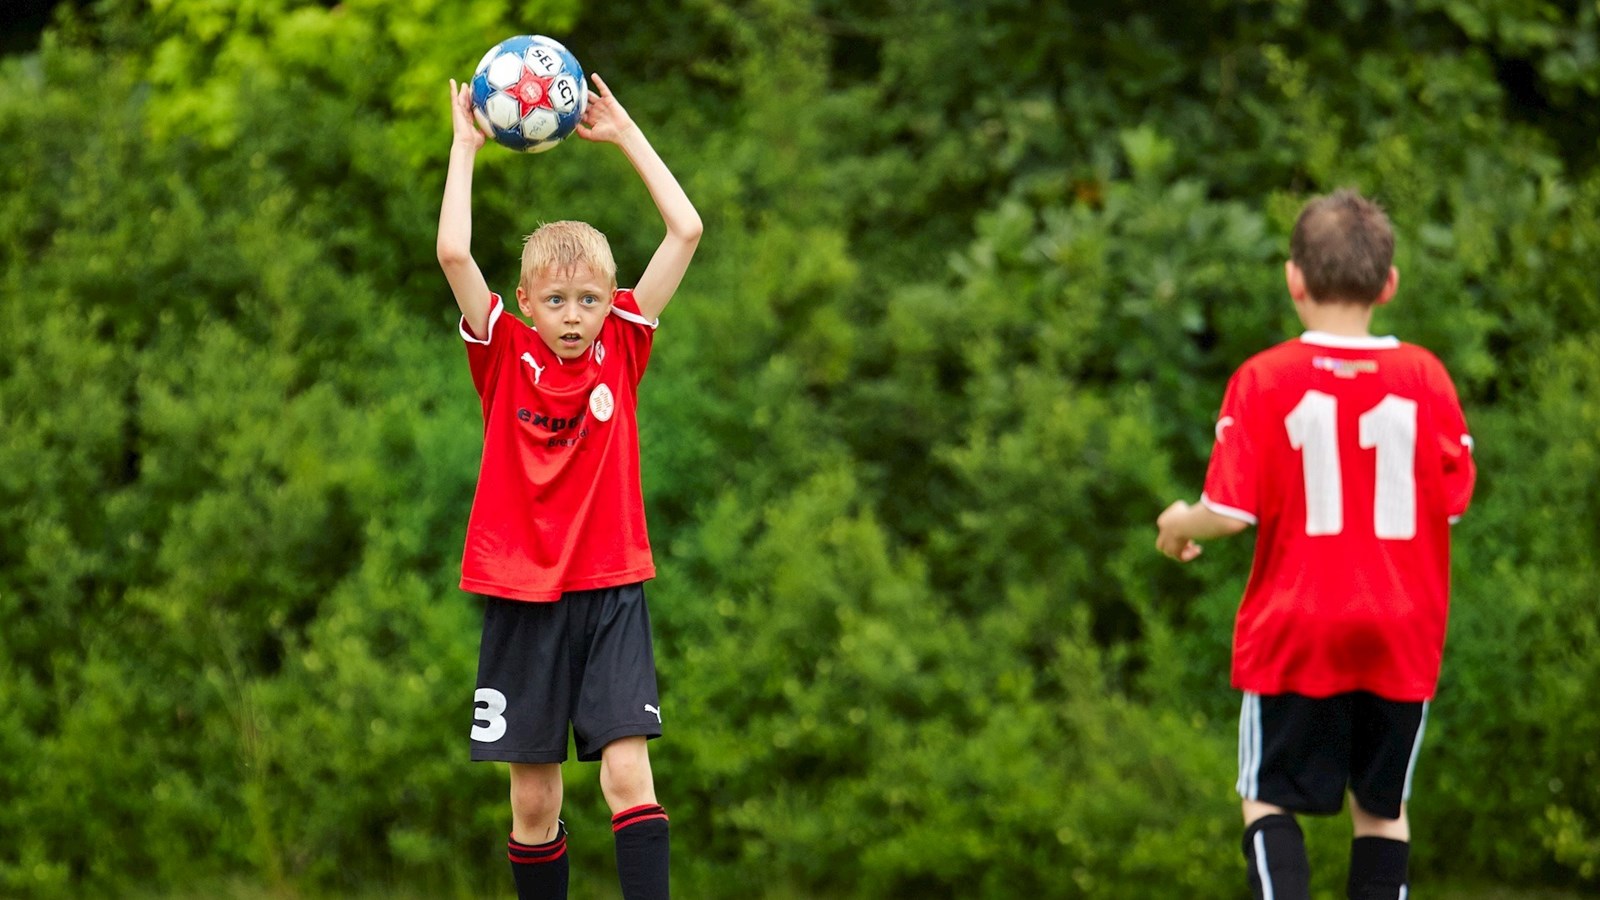 Børnefodbold: Hvad er ombrydning, og hvorfor gør vi det?